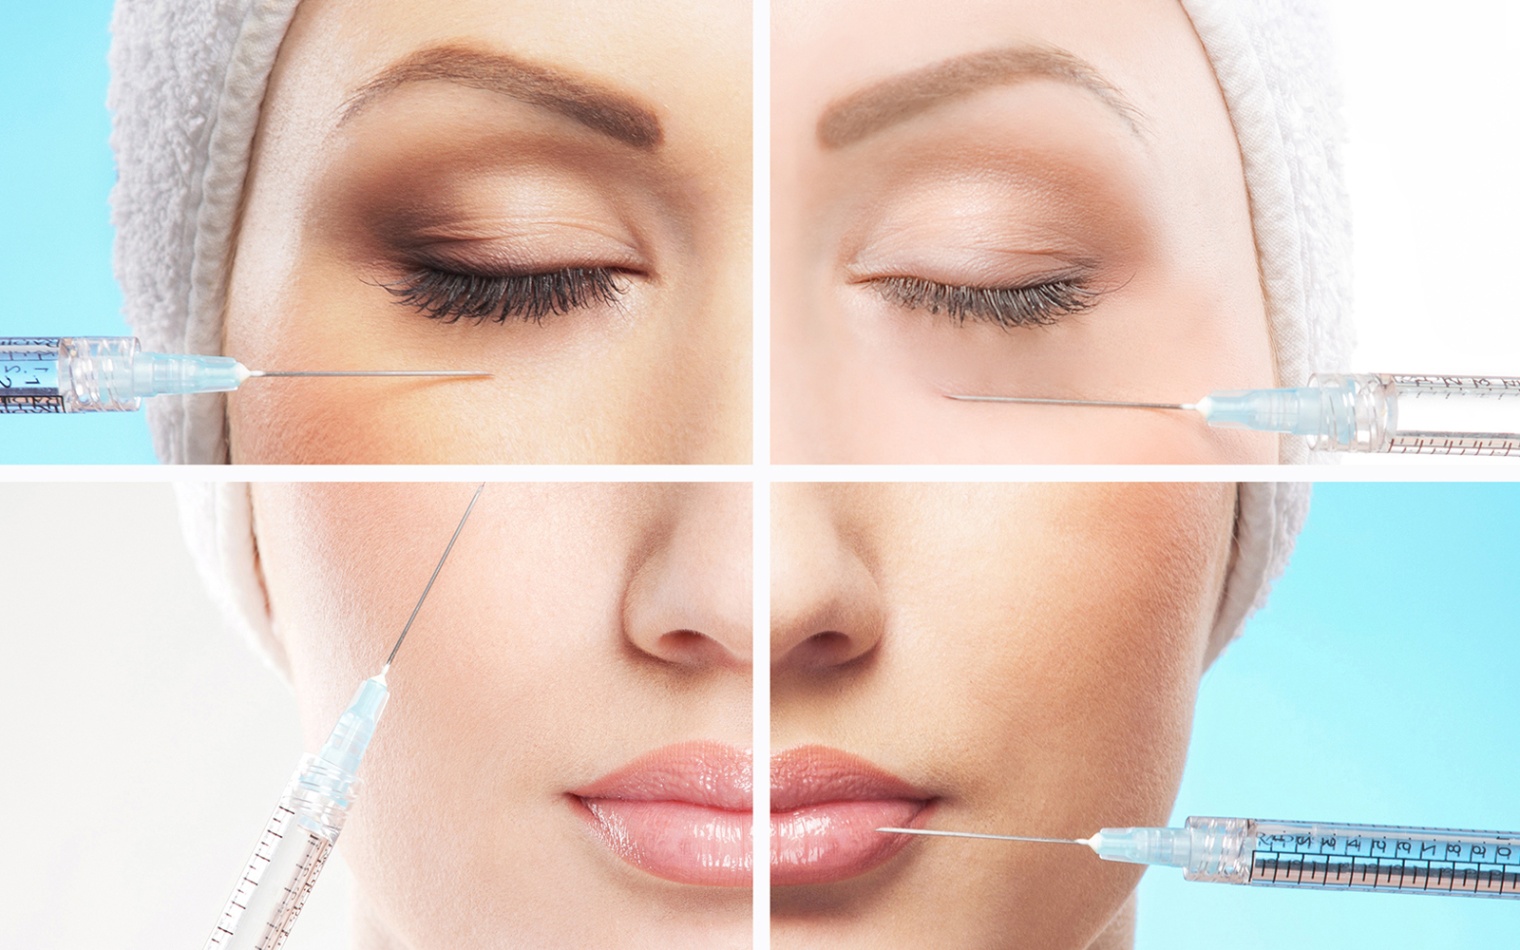 Процедура контурной пластики лица - коррекция глубоких морщин, увеличение объема губ